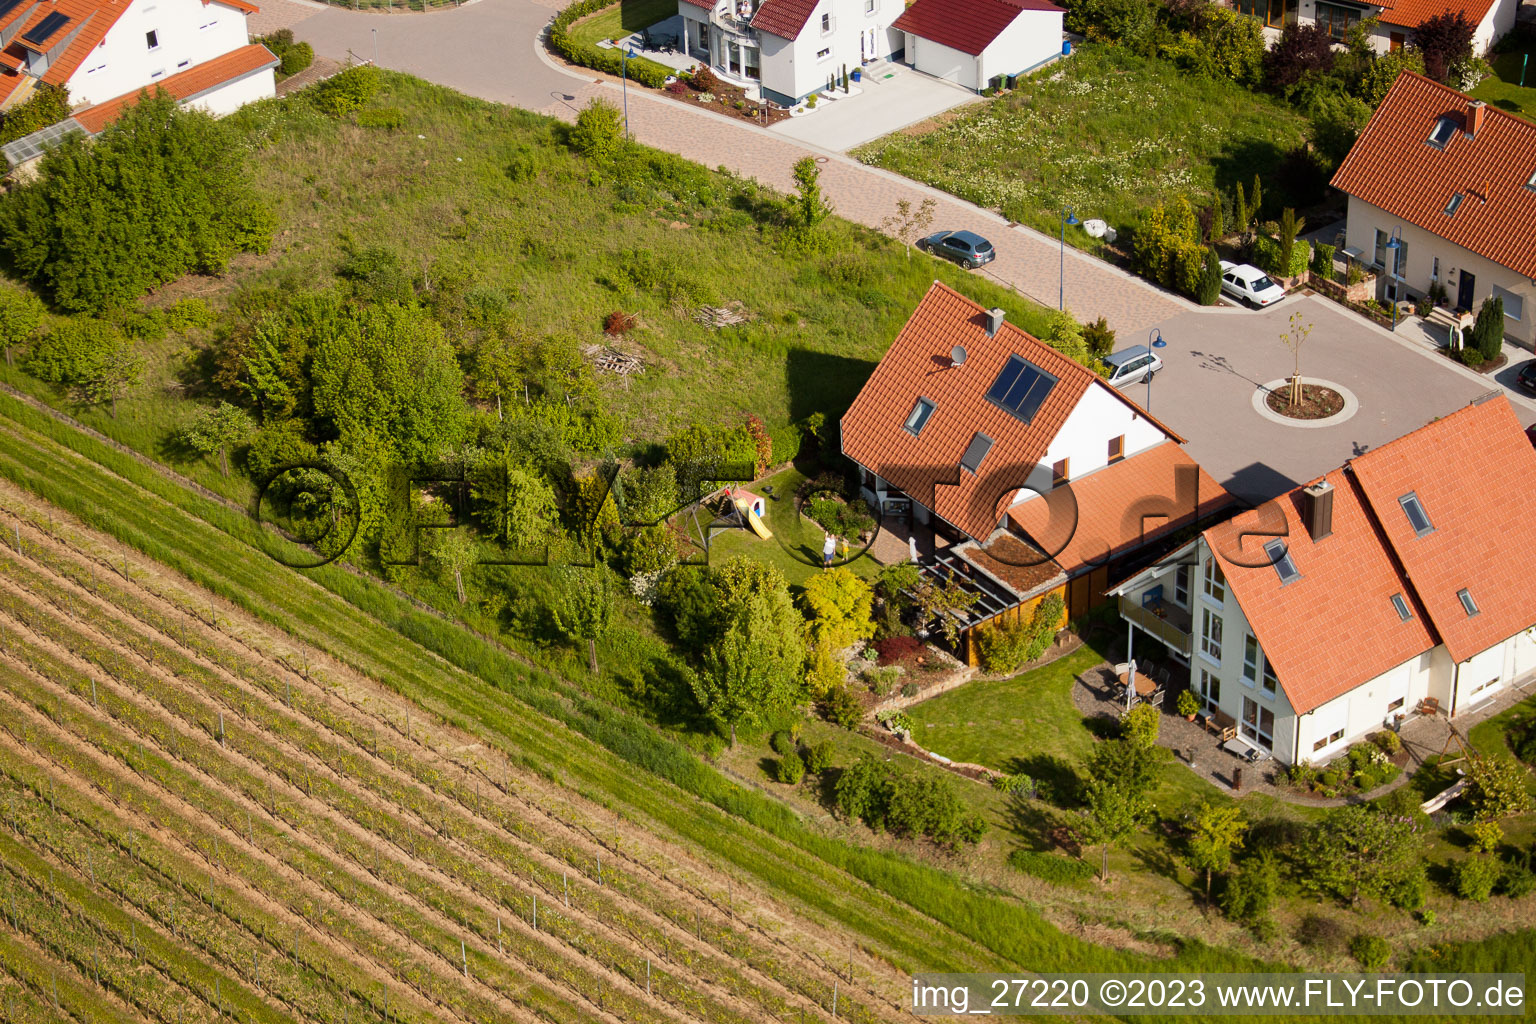 Drone recording of District Mörzheim in Landau in der Pfalz in the state Rhineland-Palatinate, Germany